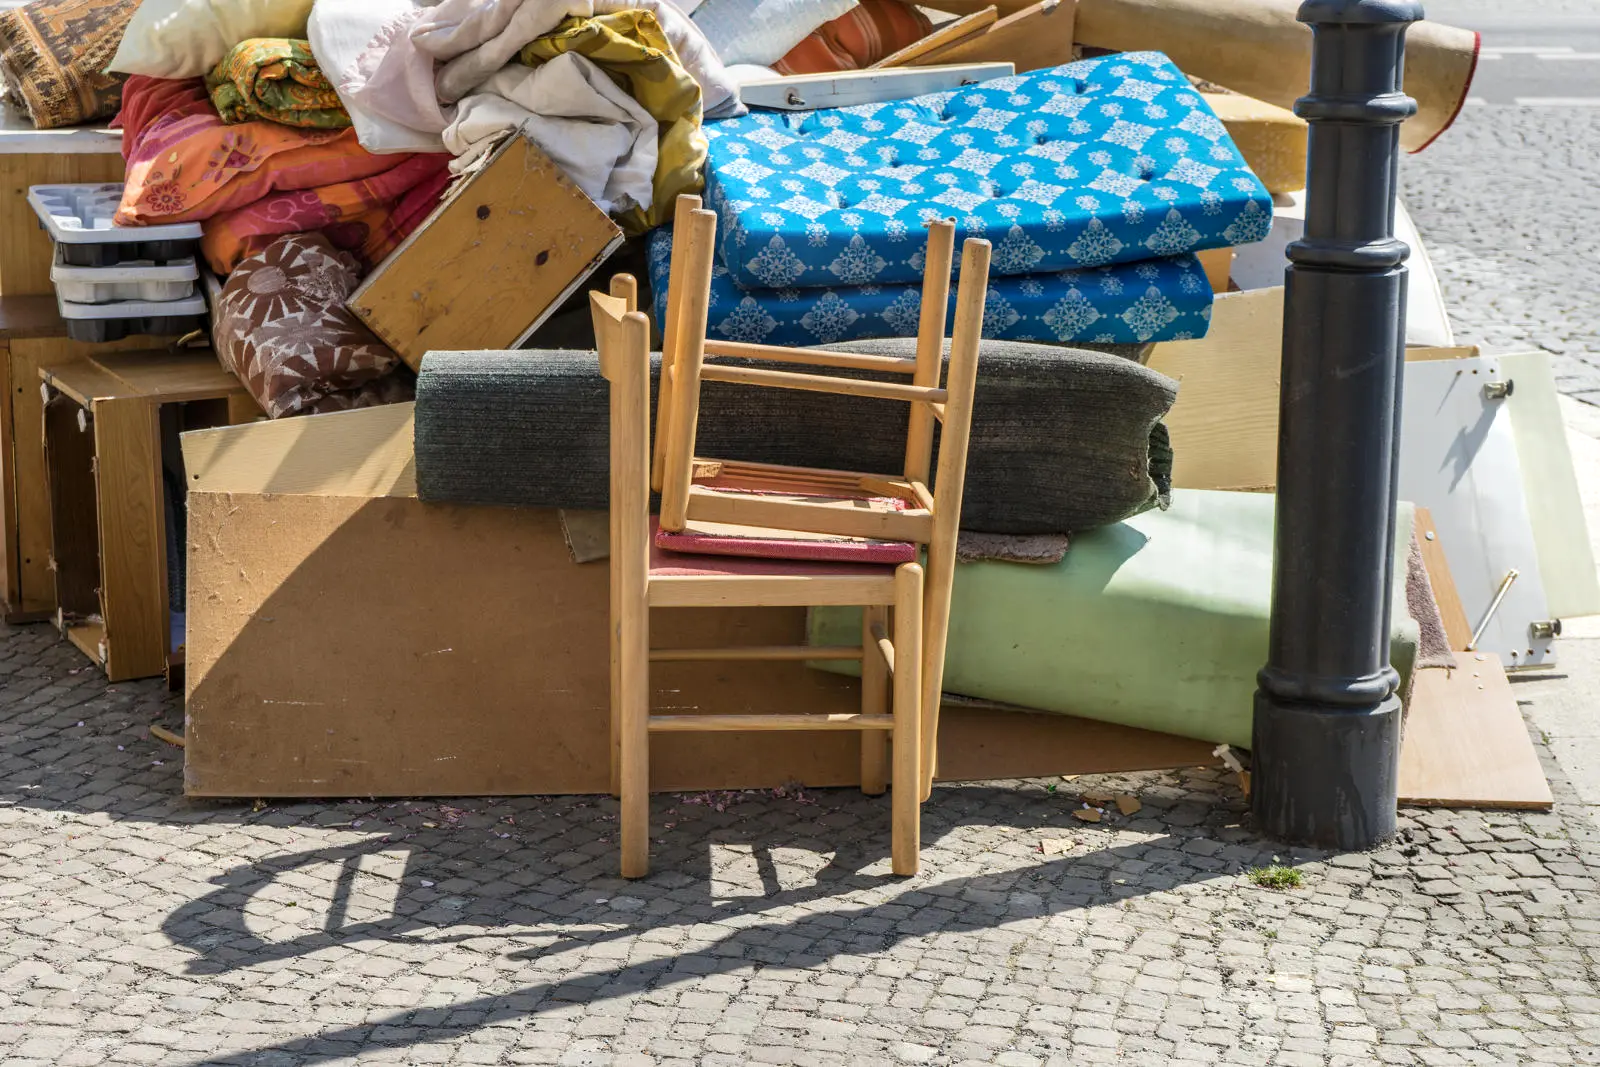 Foto verschiedener Möbel und Haushaltsgegenständen nach einer Entrümpelung in Düsseldorf.